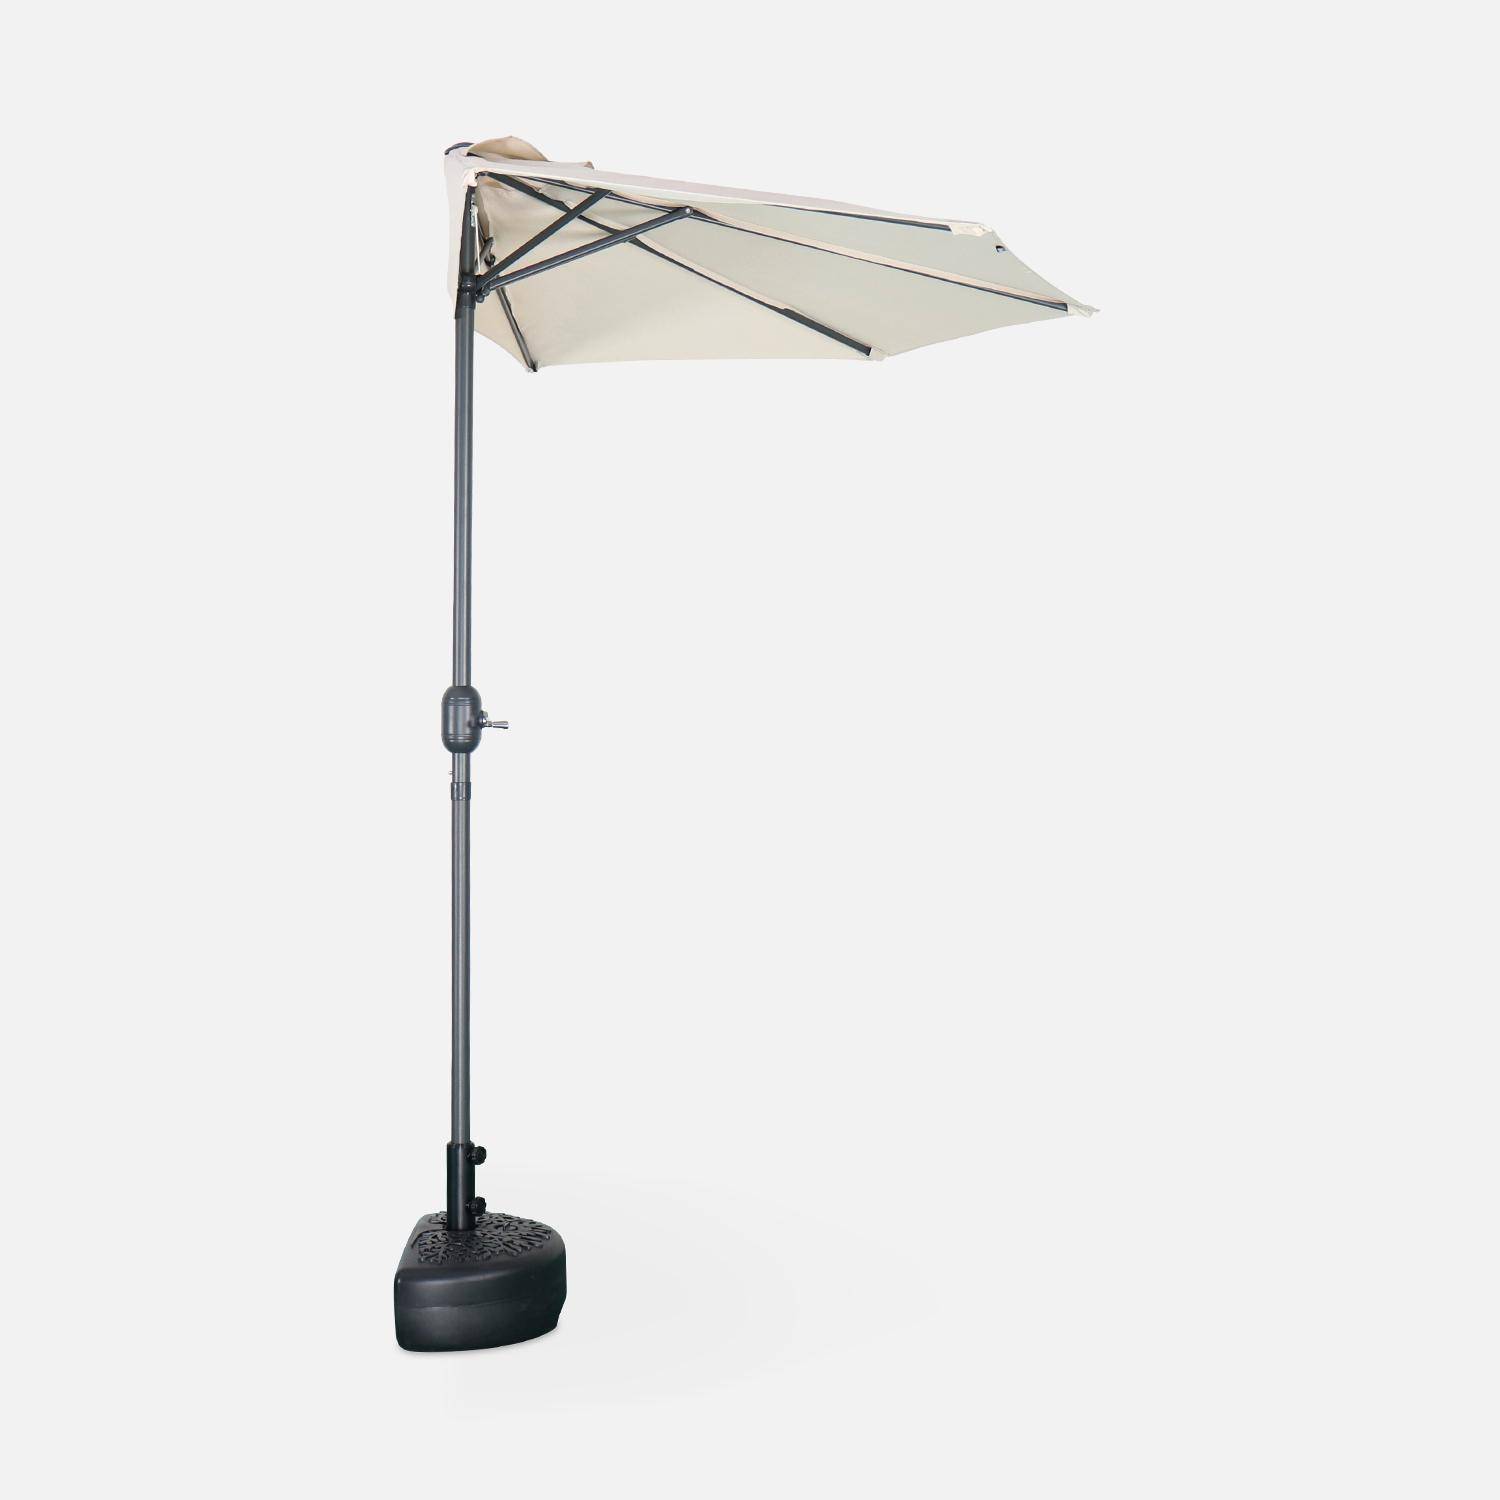  Parasol para balcón Ø250cm - CALVI - Medio parasol recto, mástil de aluminio con manivela, tejido arena Photo4